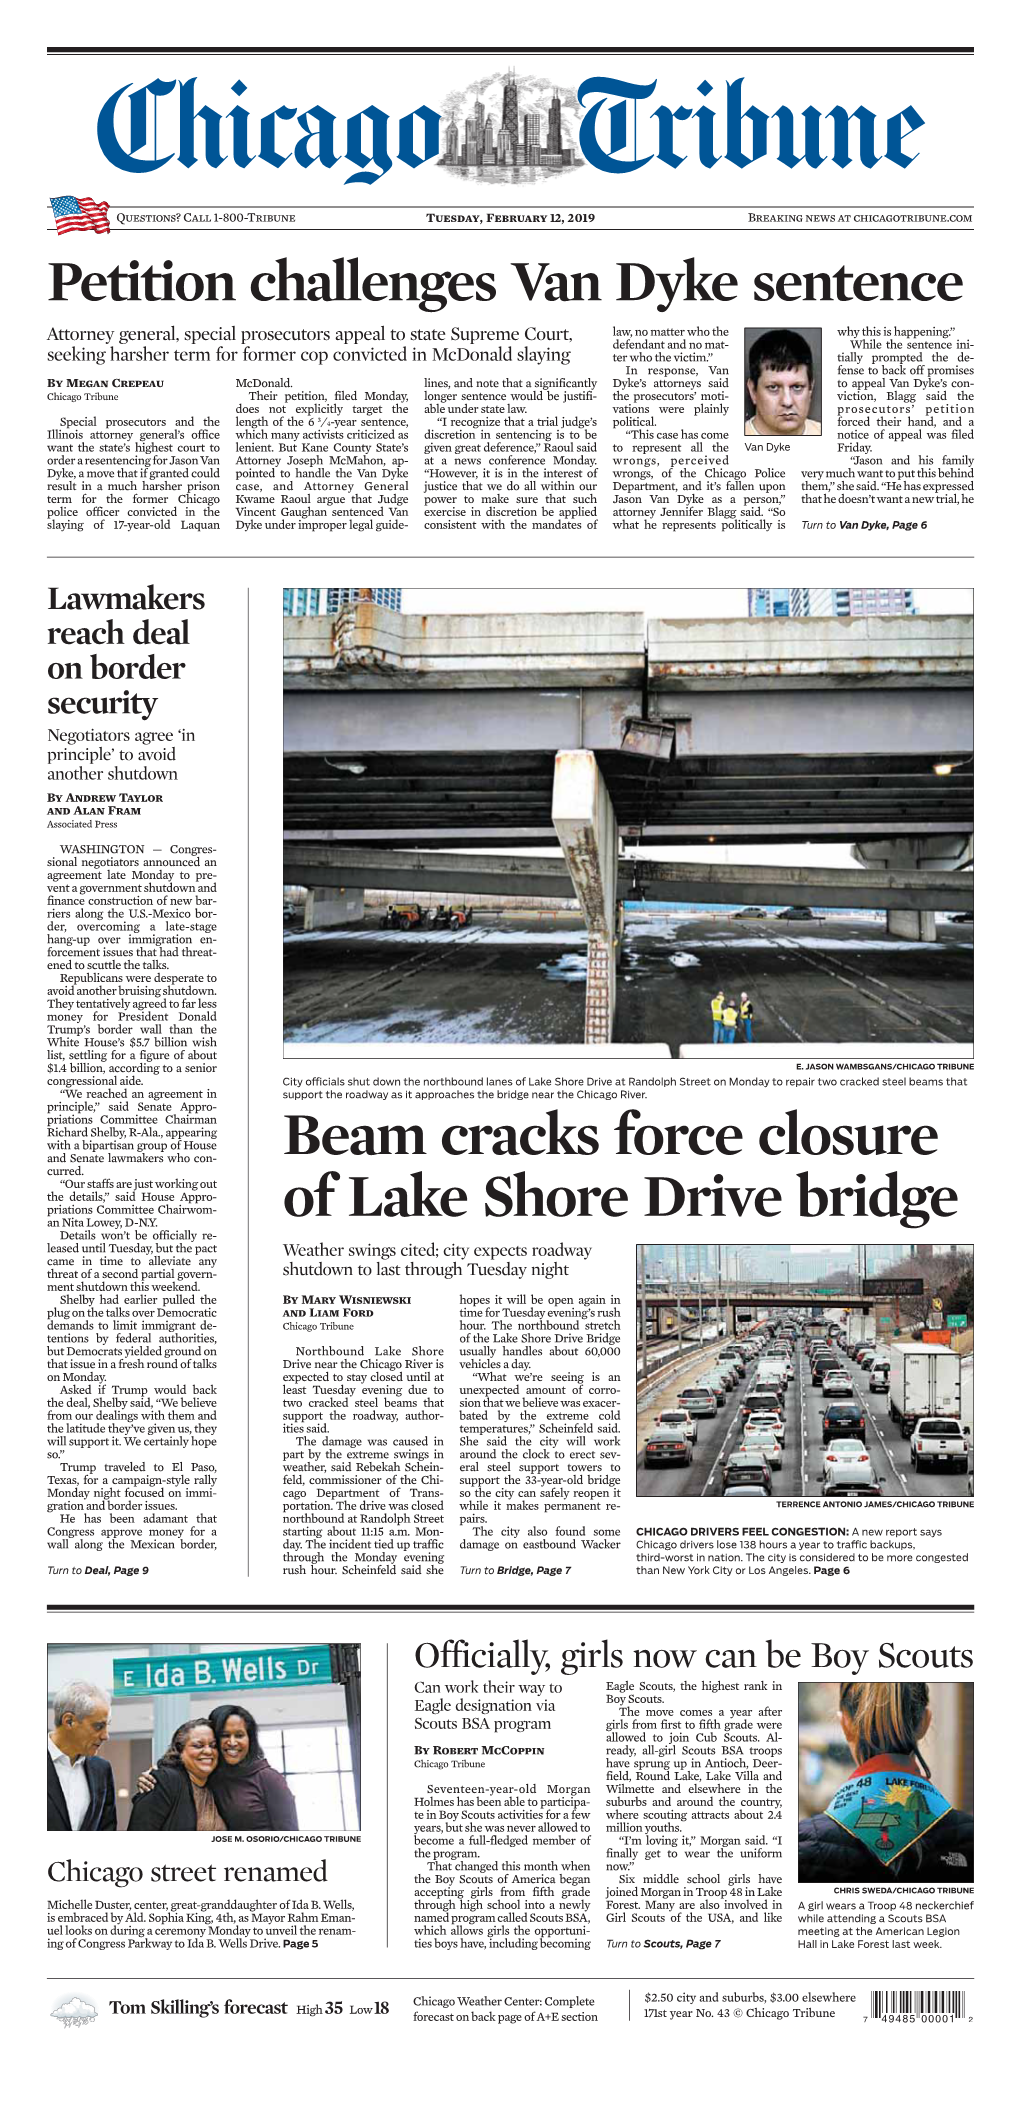 Beam Cracks Force Closure of Lake Shore Drive Bridge